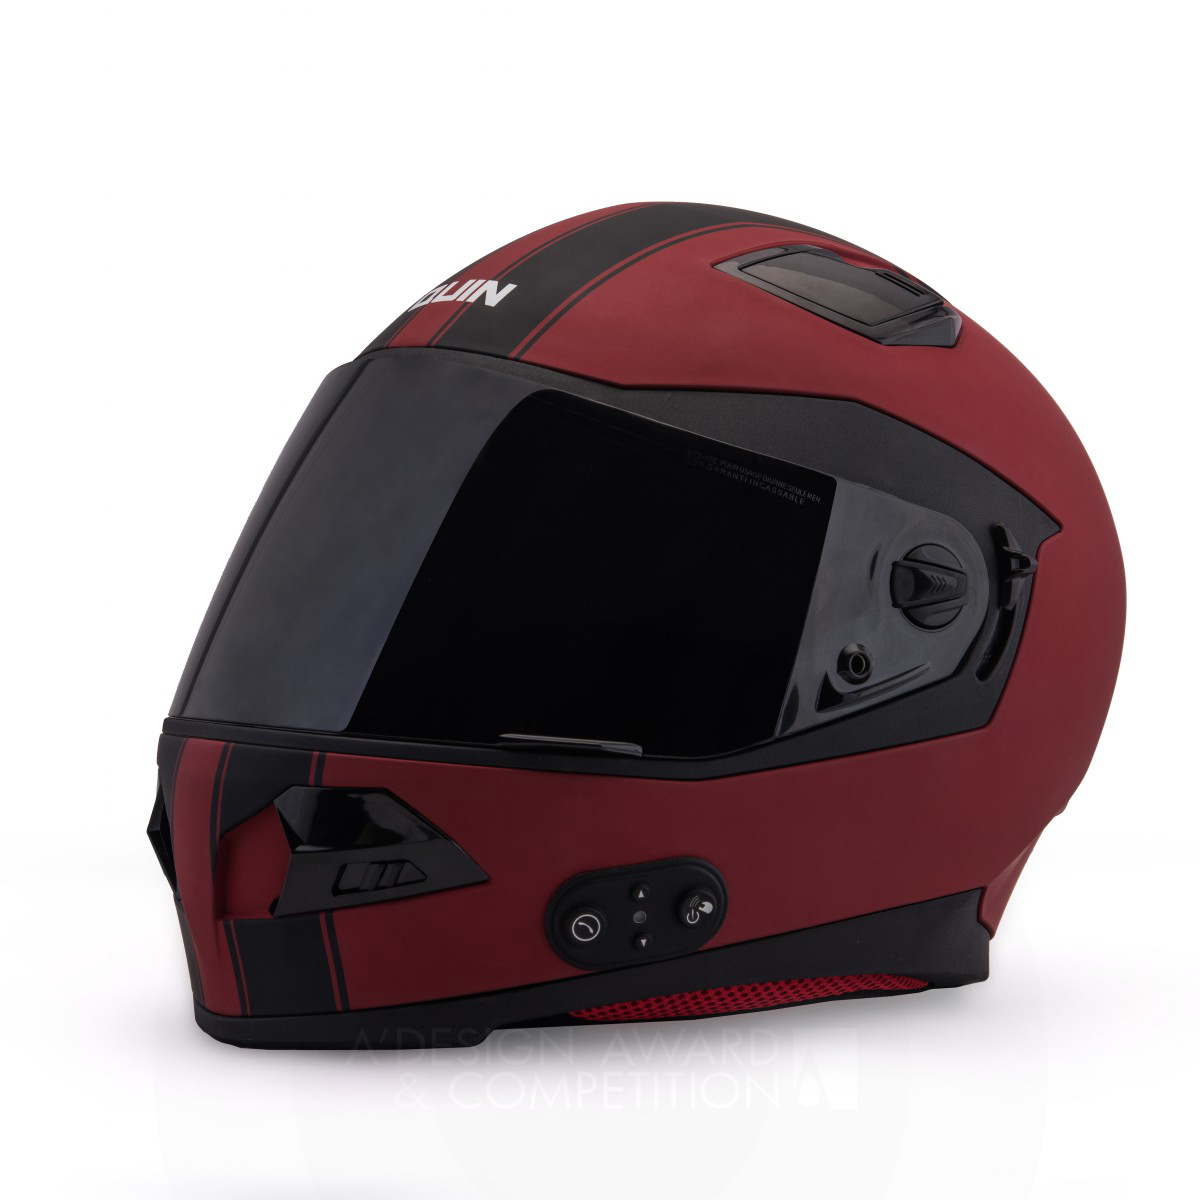 Quin Design Smart Motorcycle Helmet